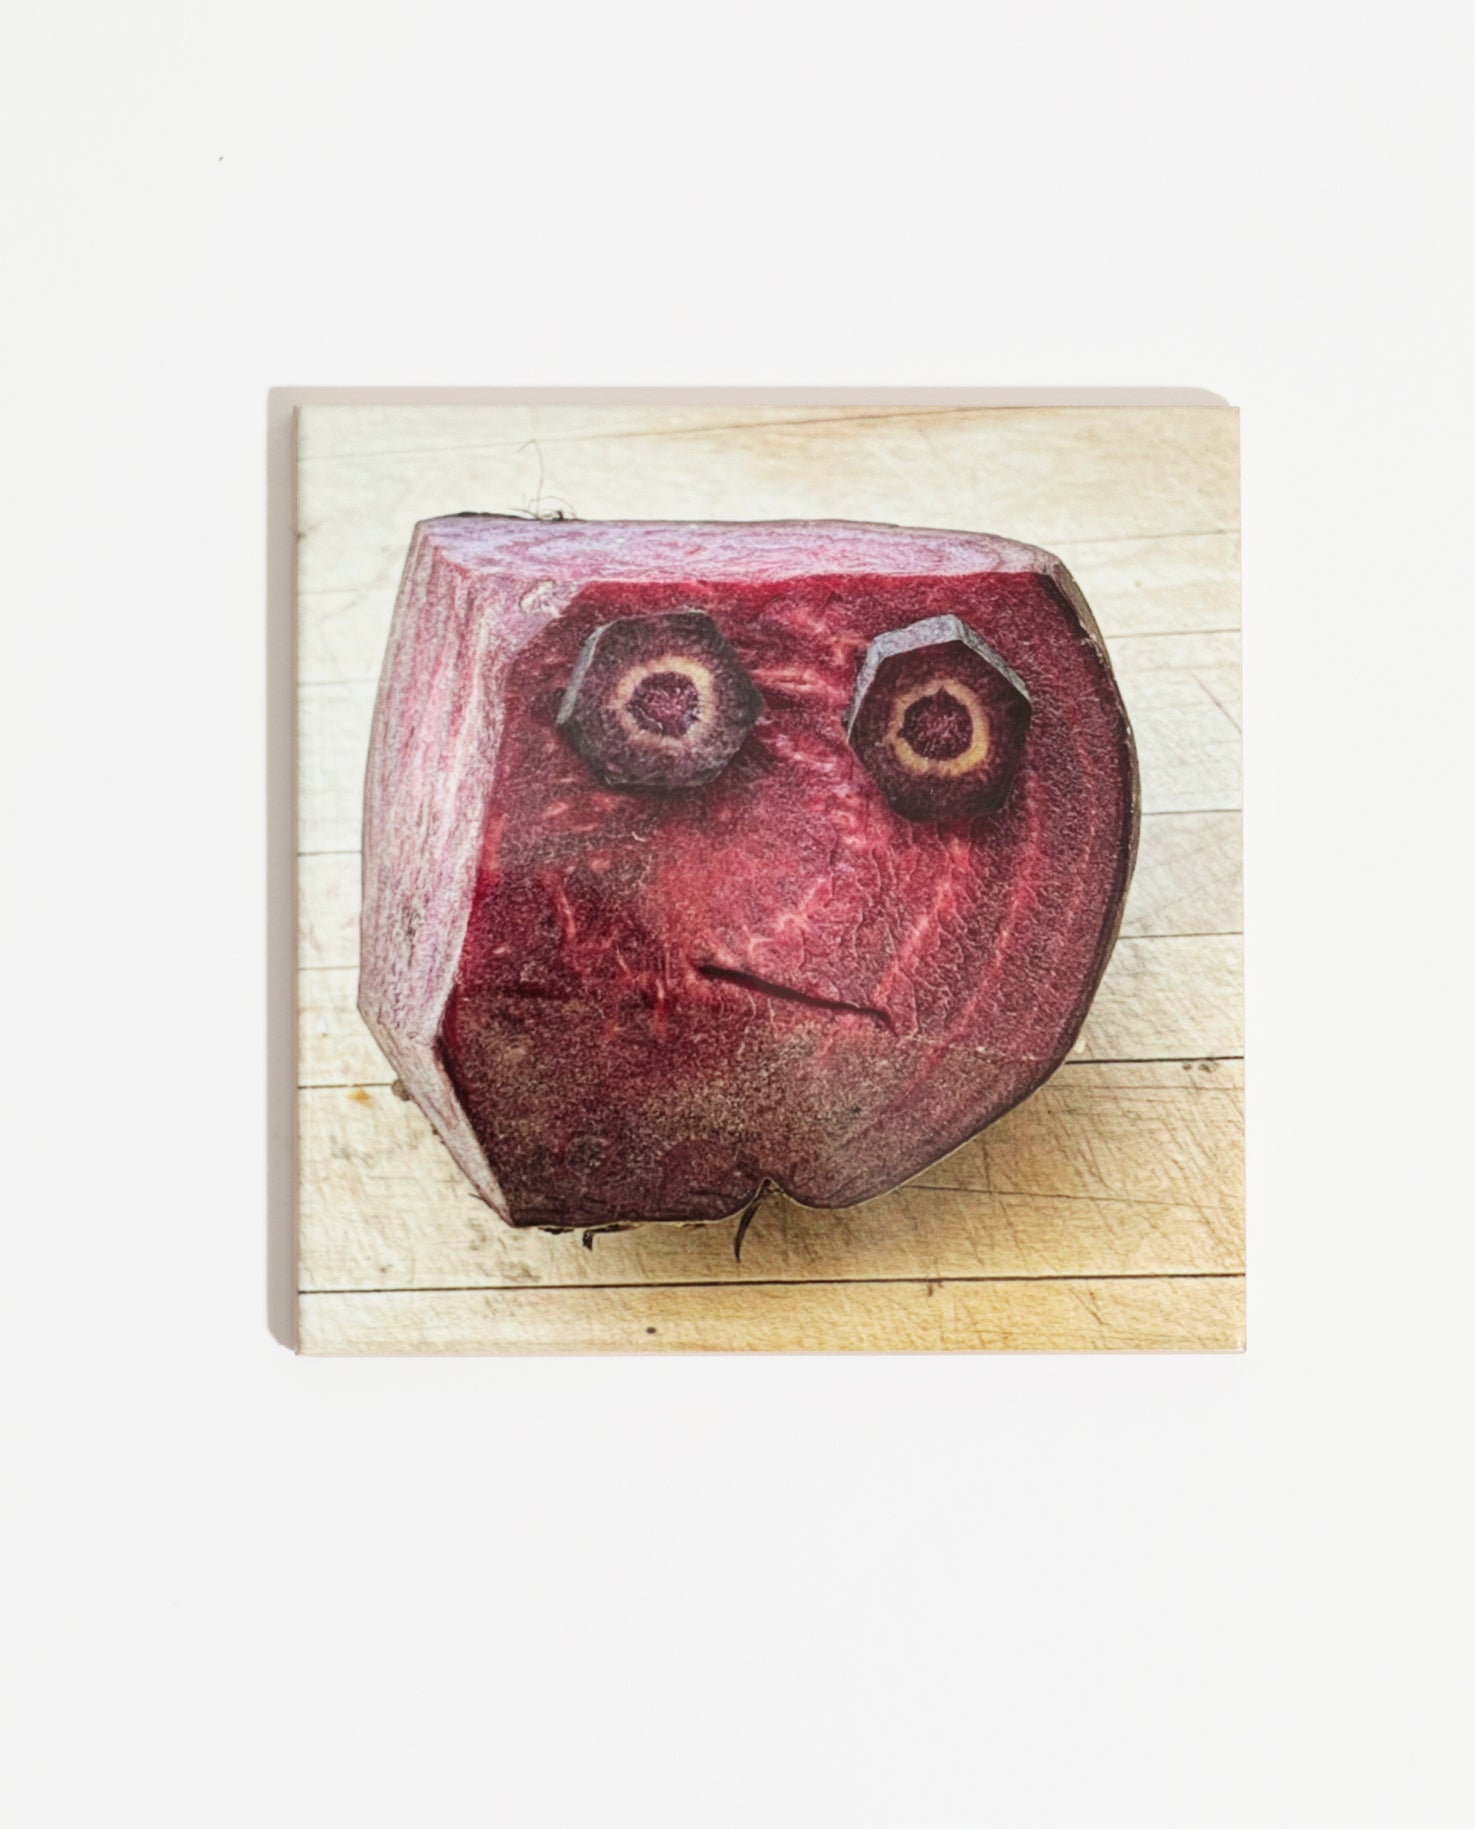 Carreau de faïence imprimée d'une photo de l'artiste Olaf Breuning représentant un visage sur un morceau de bettrave rouge. Celui-ci peut être intégré à une faïence de cuisine ou accroché dans la maison.